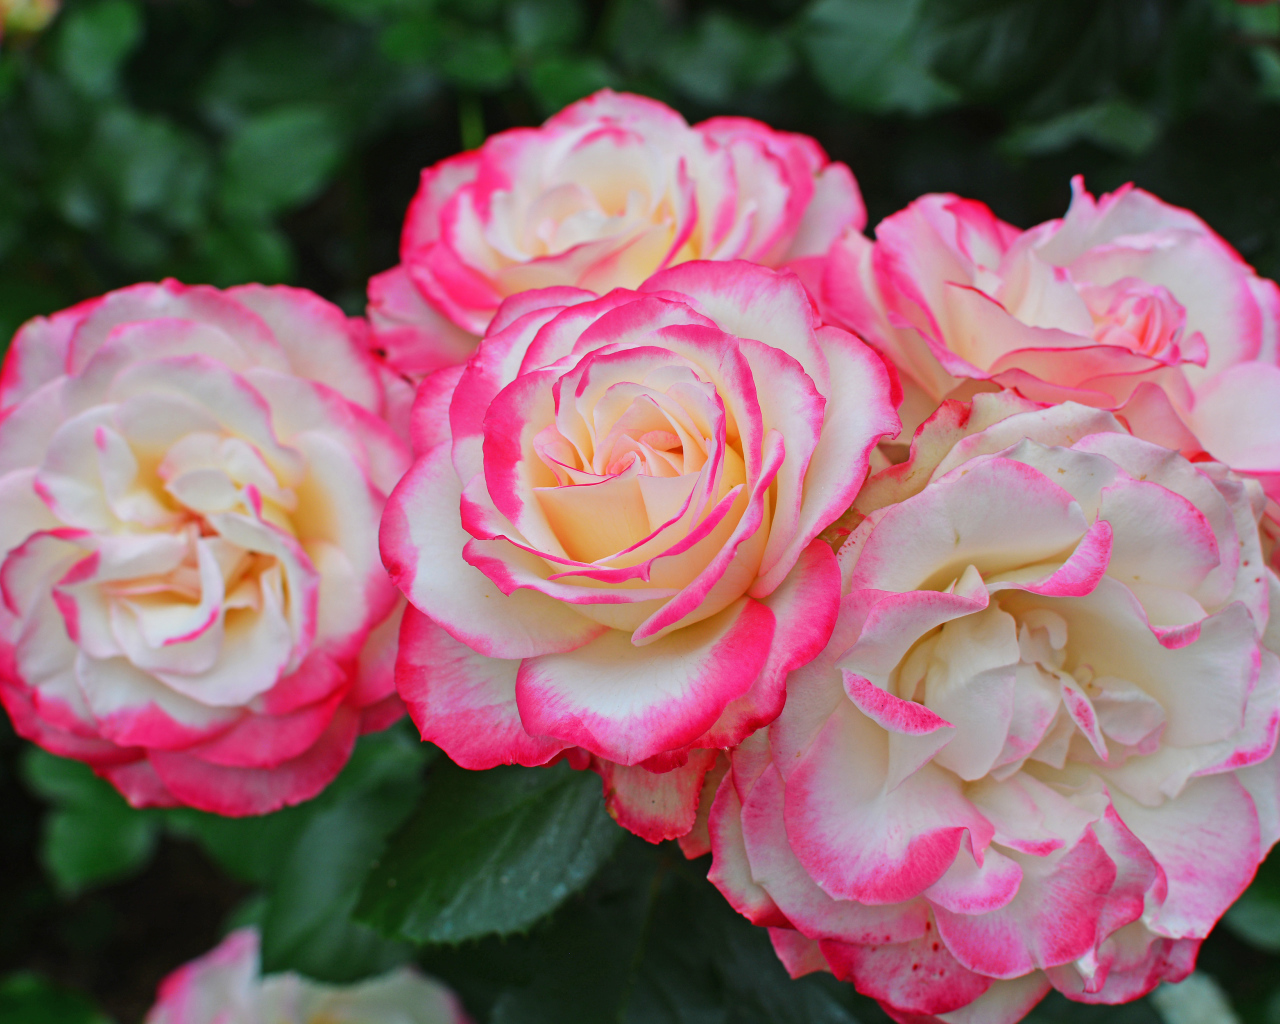 Нежные белые садовые розы с розовыми краями